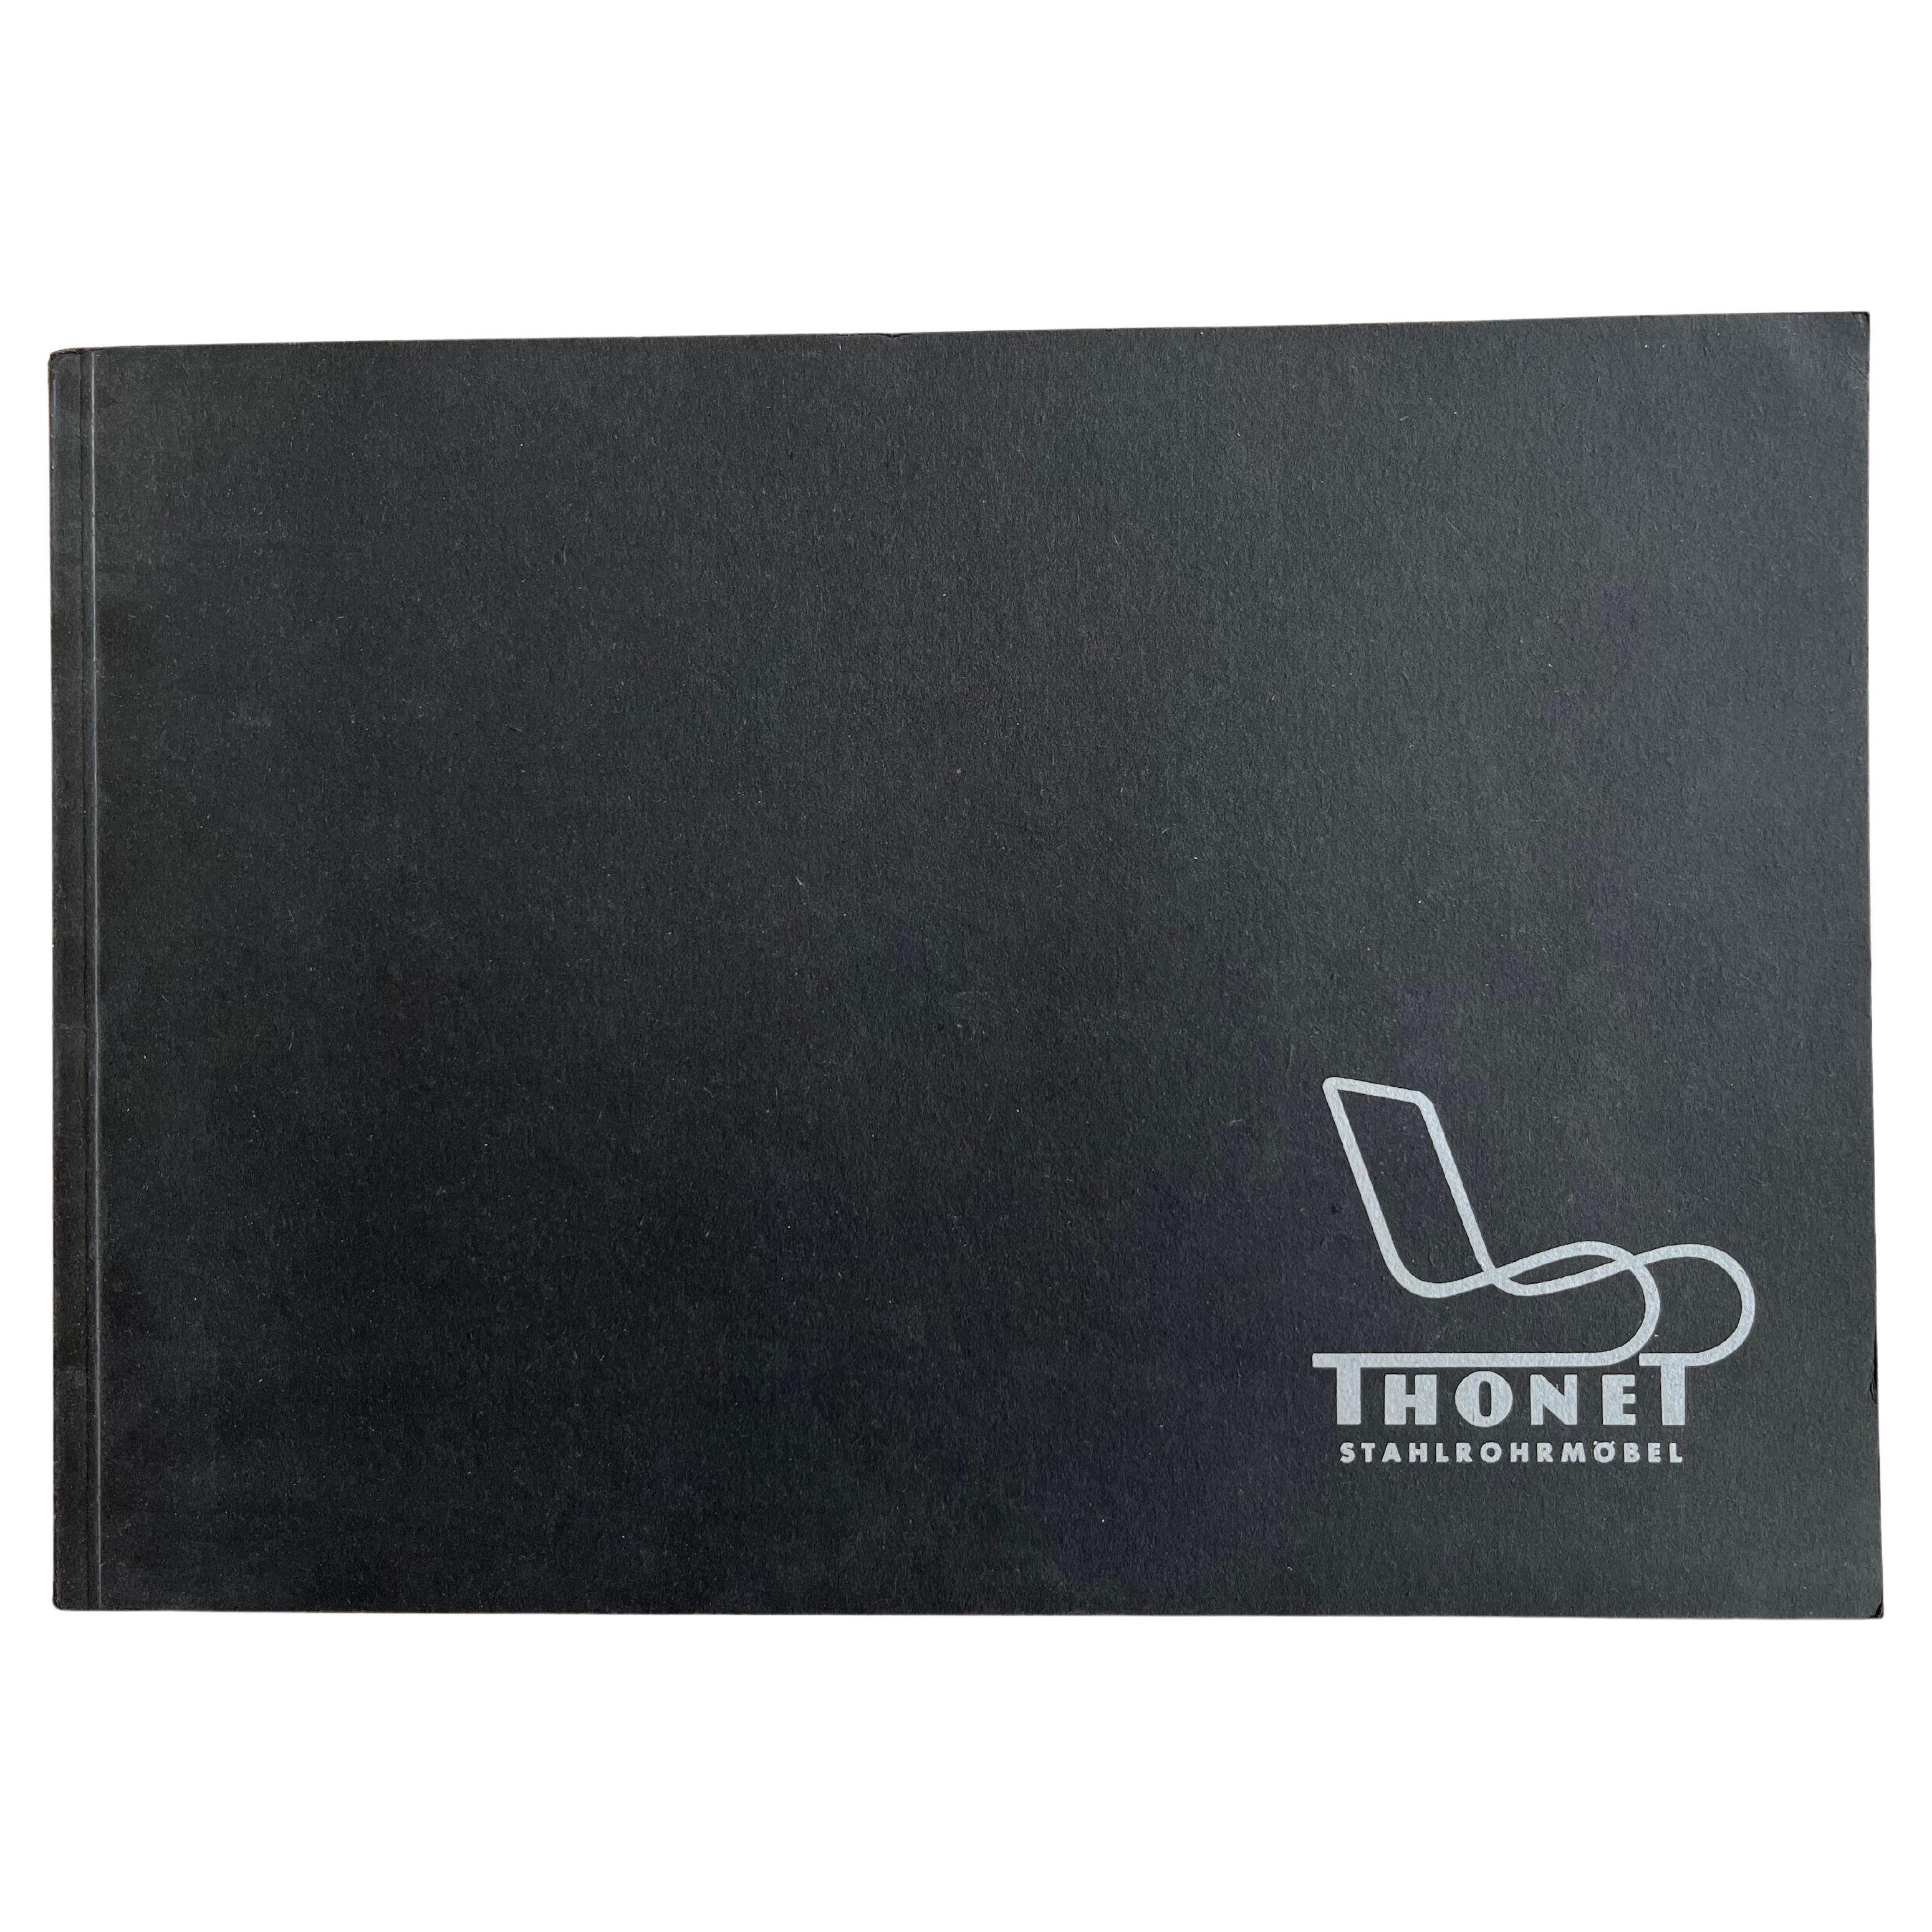 Original Thonet Stahlrohrmobel Furniture Catalogue, 1980s